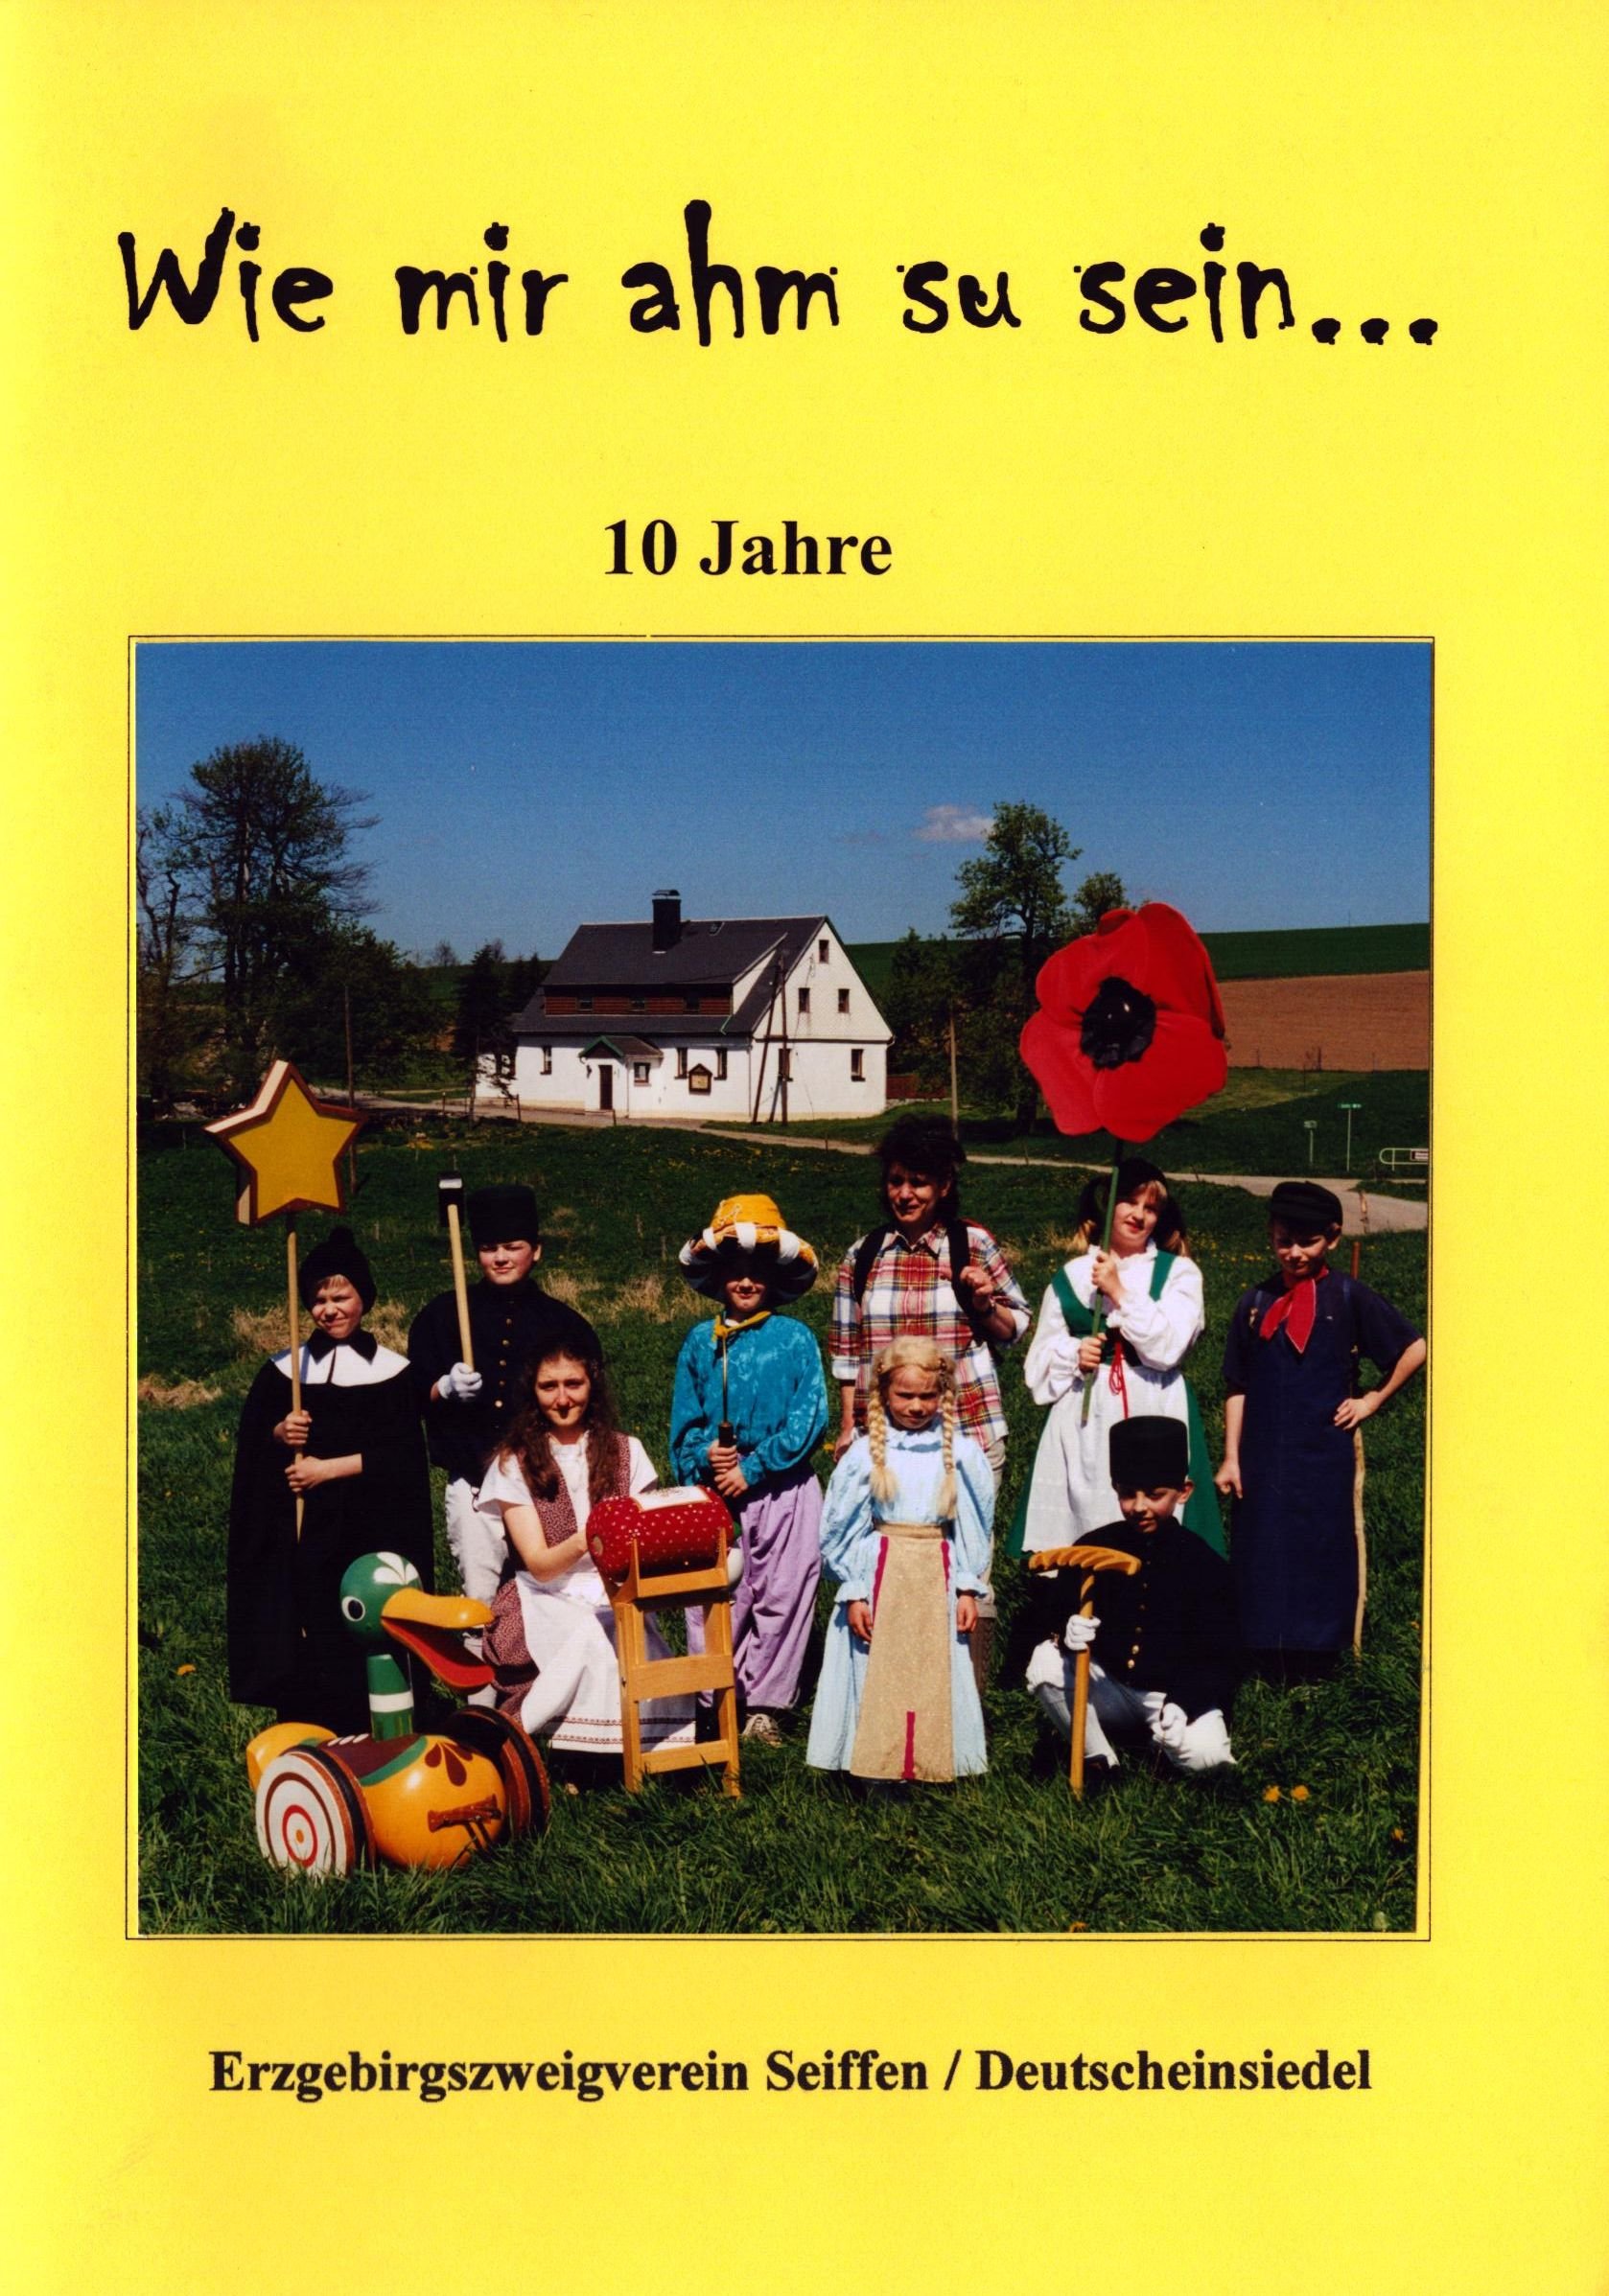 10 Jahre Erzgebirgszweigverein Seiffen / Deutscheinsiedel (Archiv SAXONIA-FREIBERG-STIFTUNG CC BY-NC-SA)